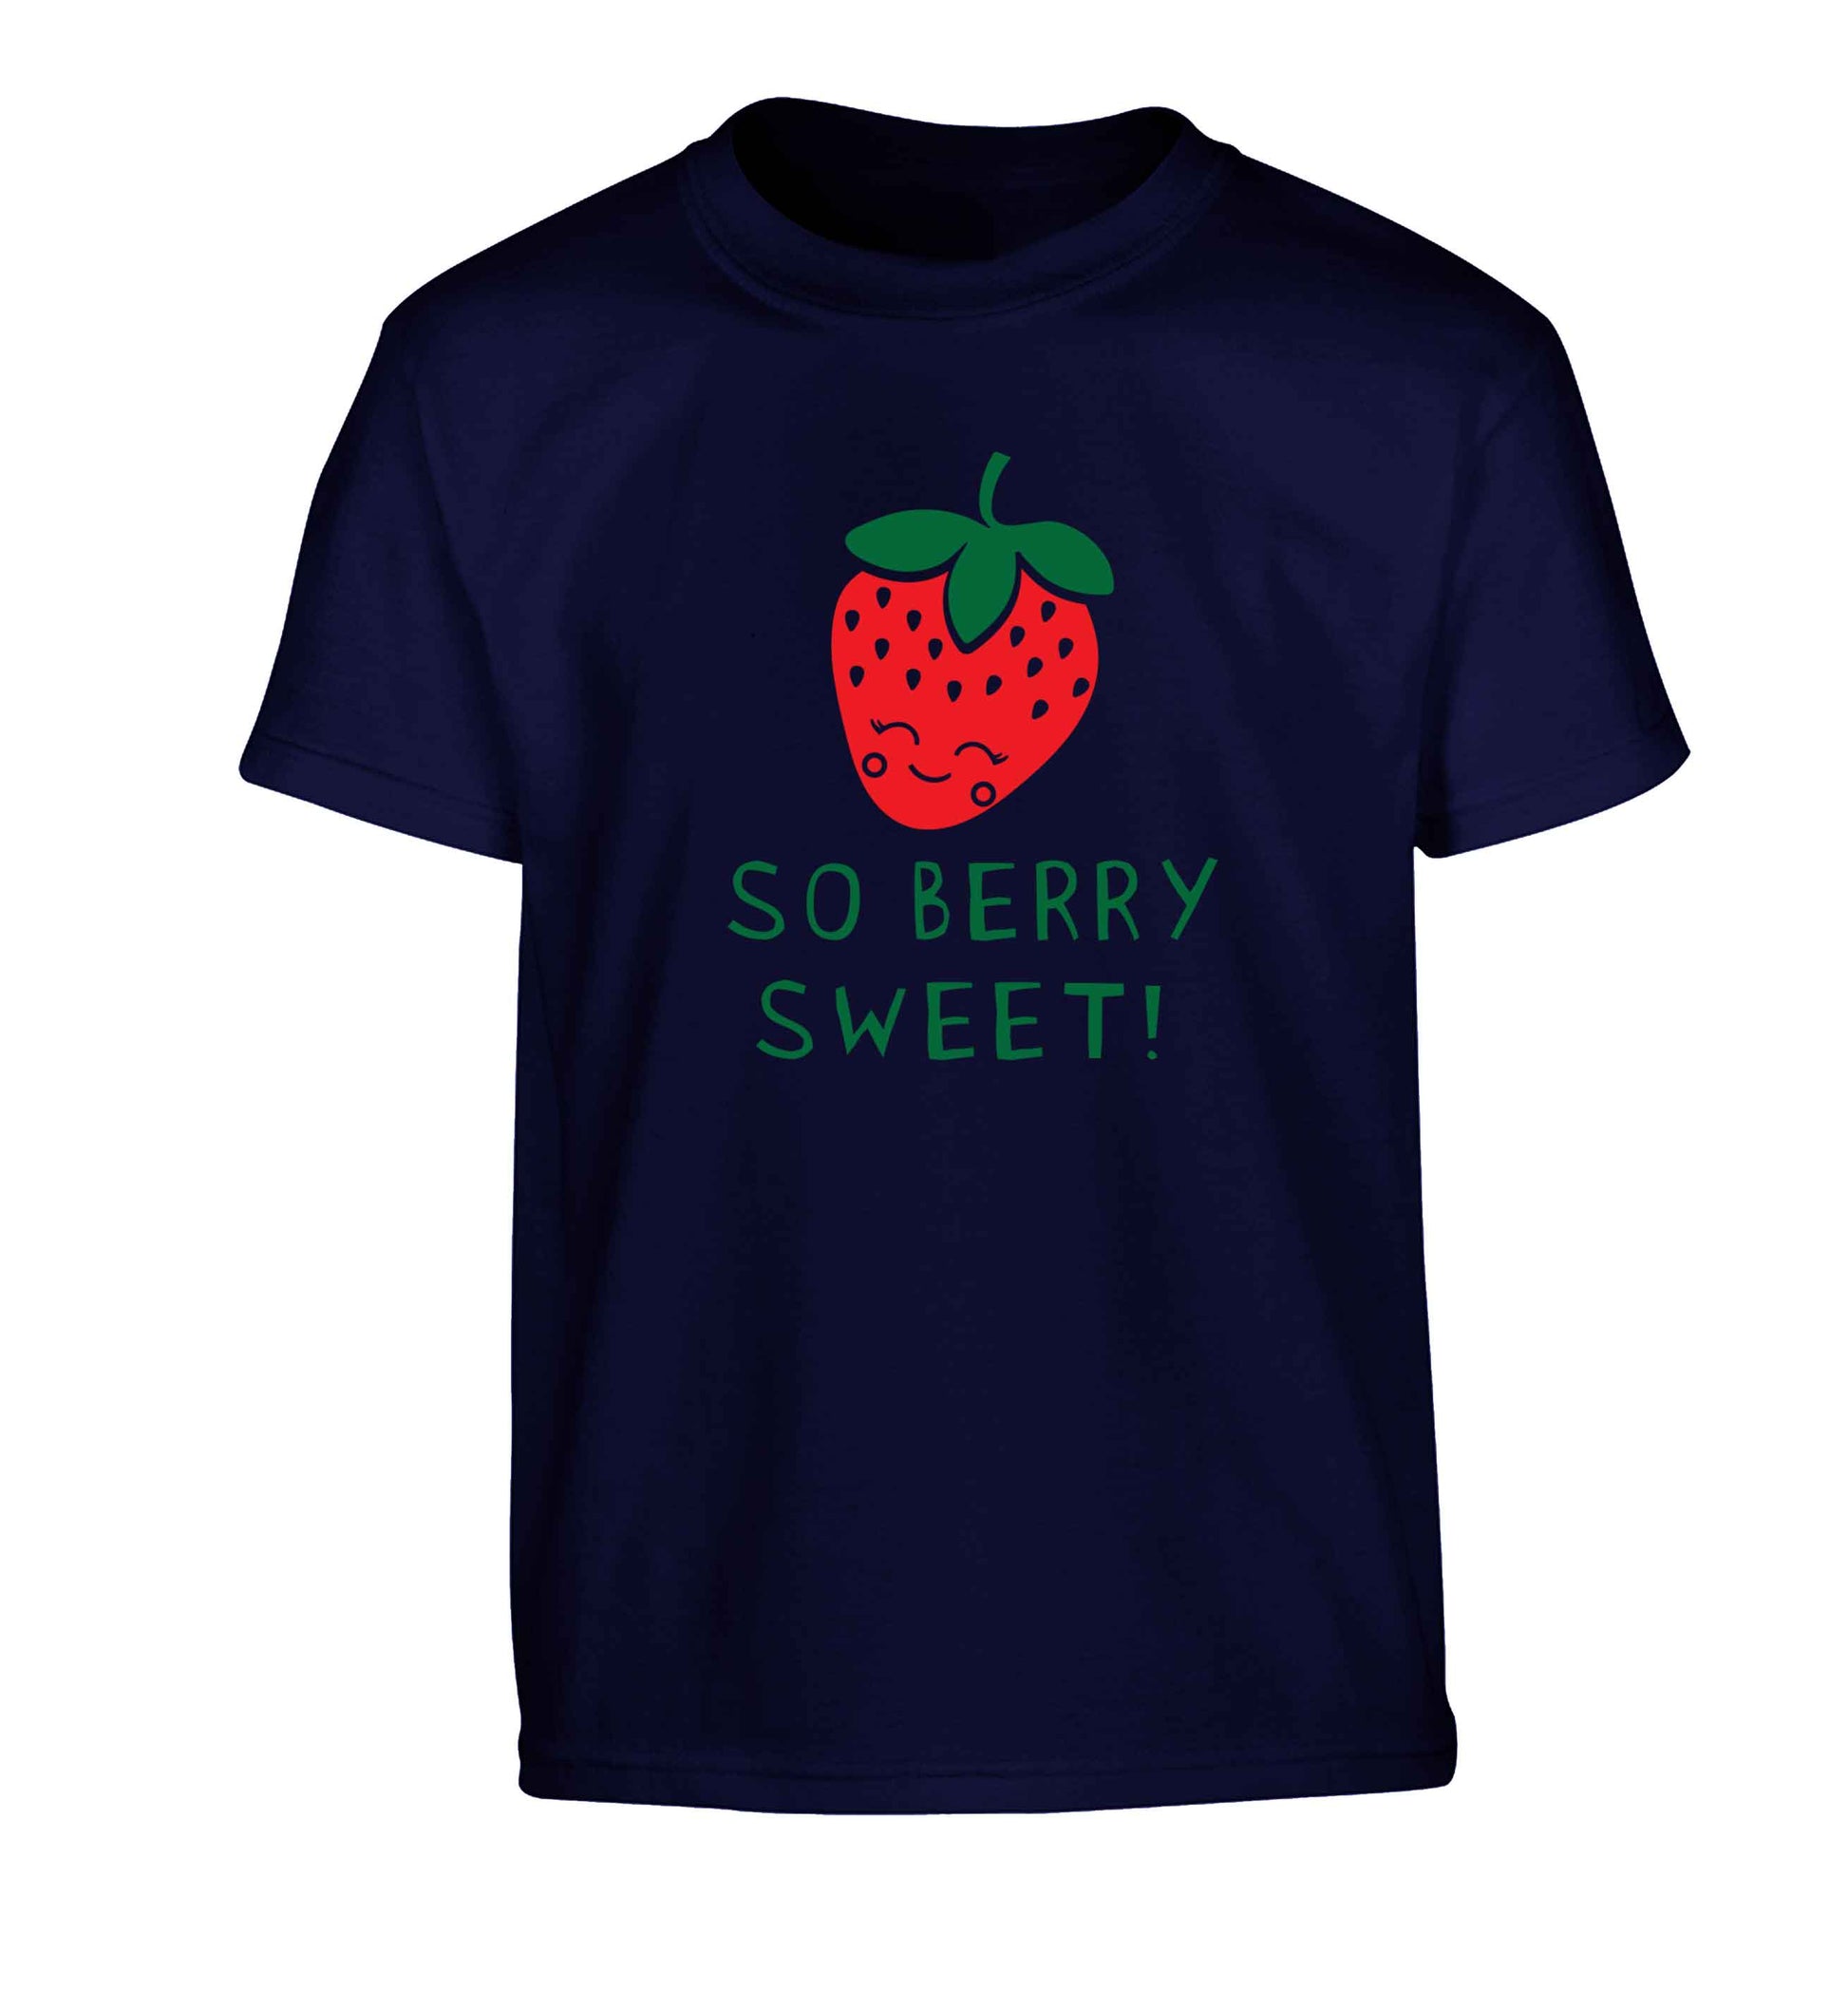 So berry sweet Children's navy Tshirt 12-13 Years